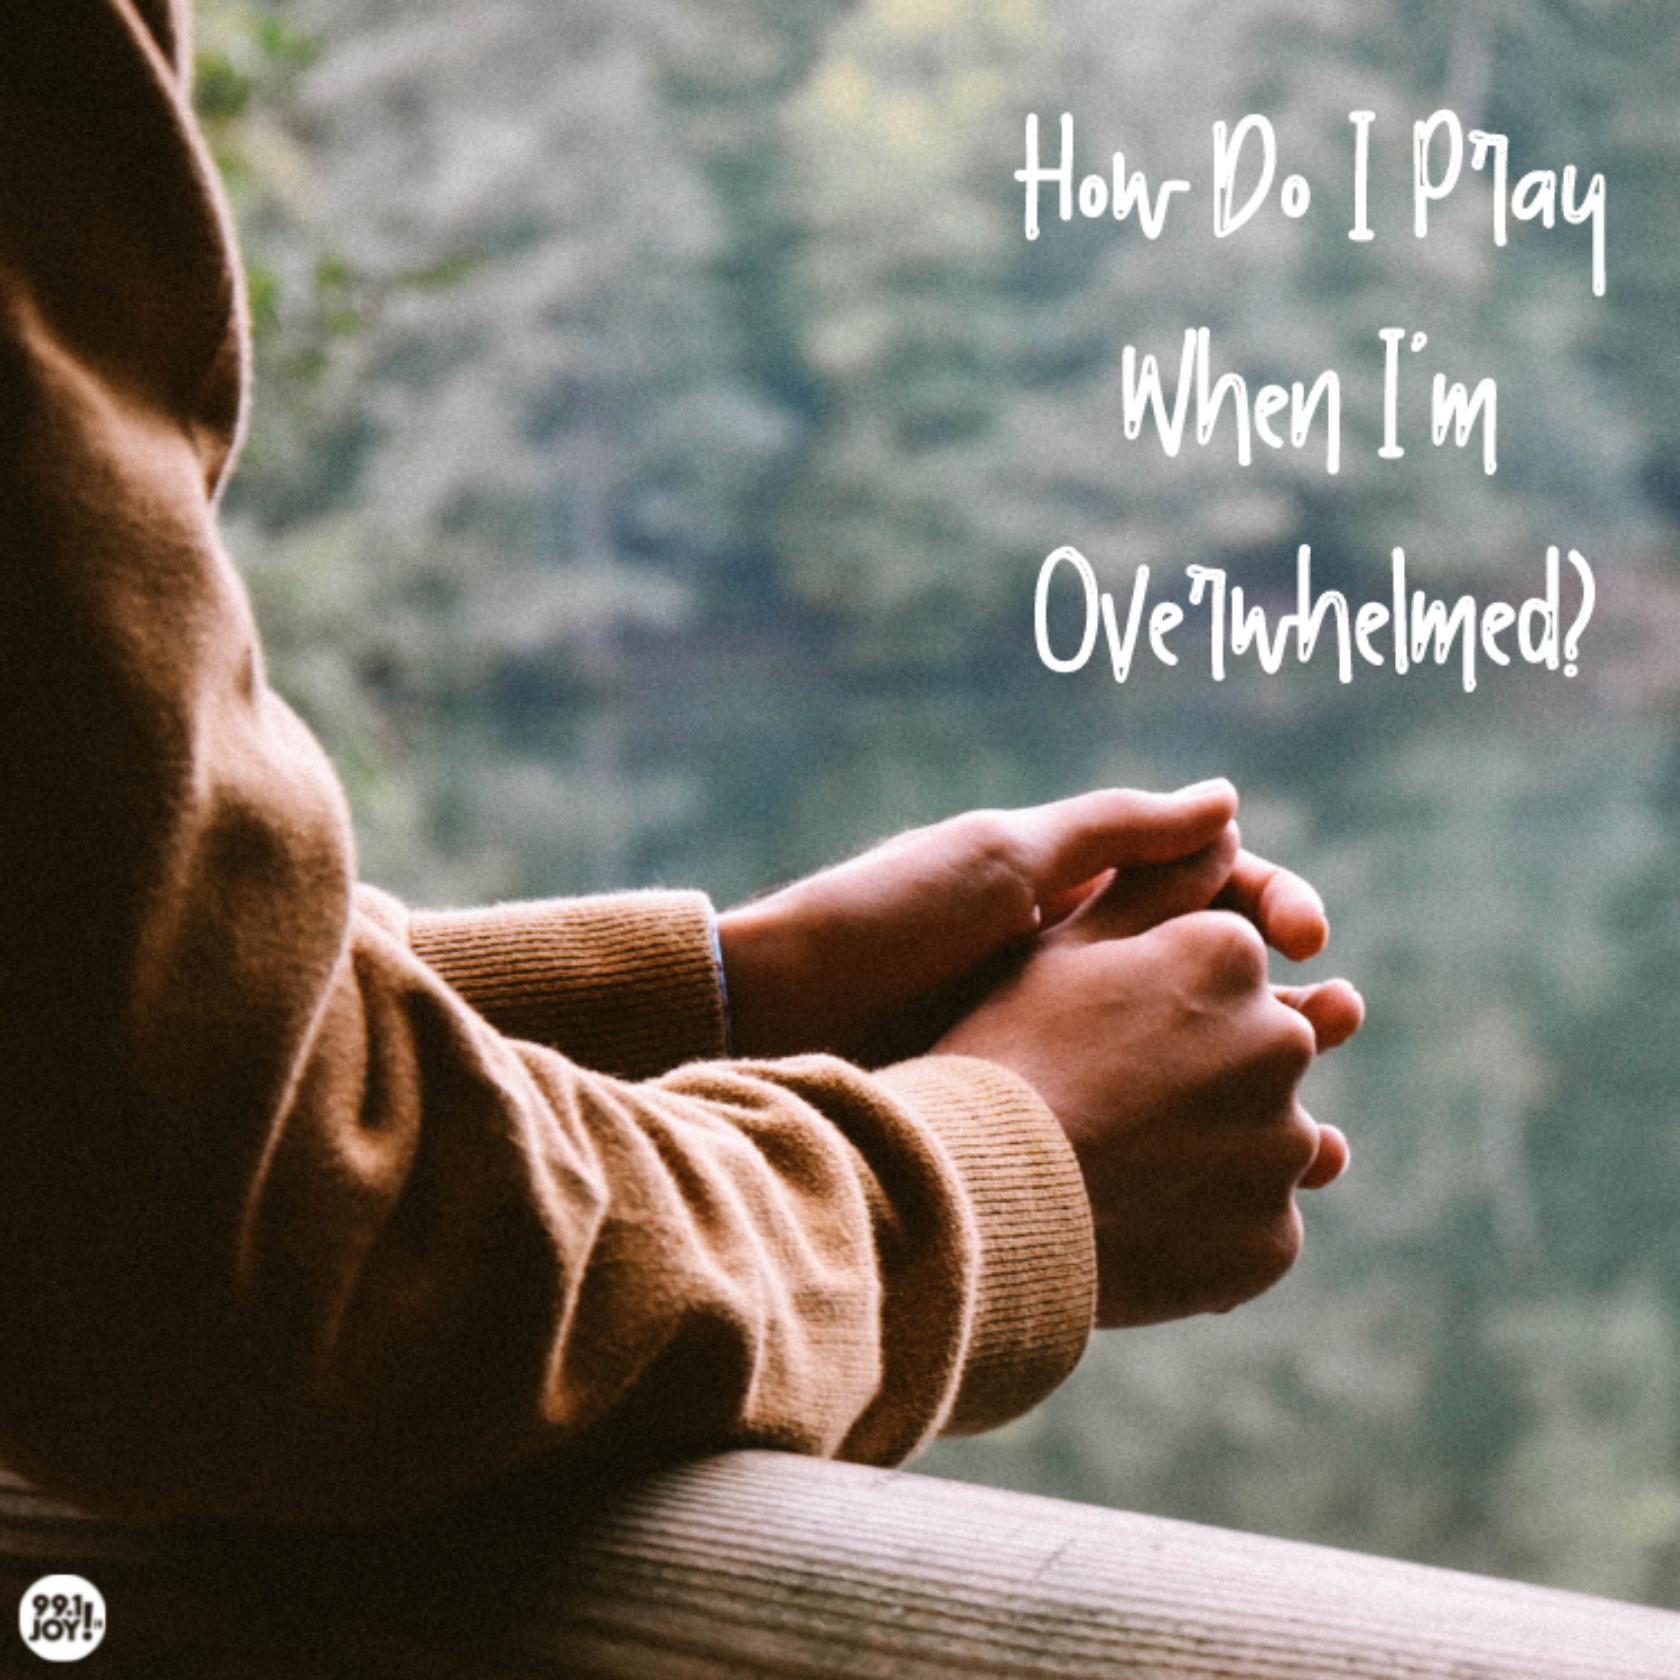 How Do I Pray When I’m Overwhelmed?